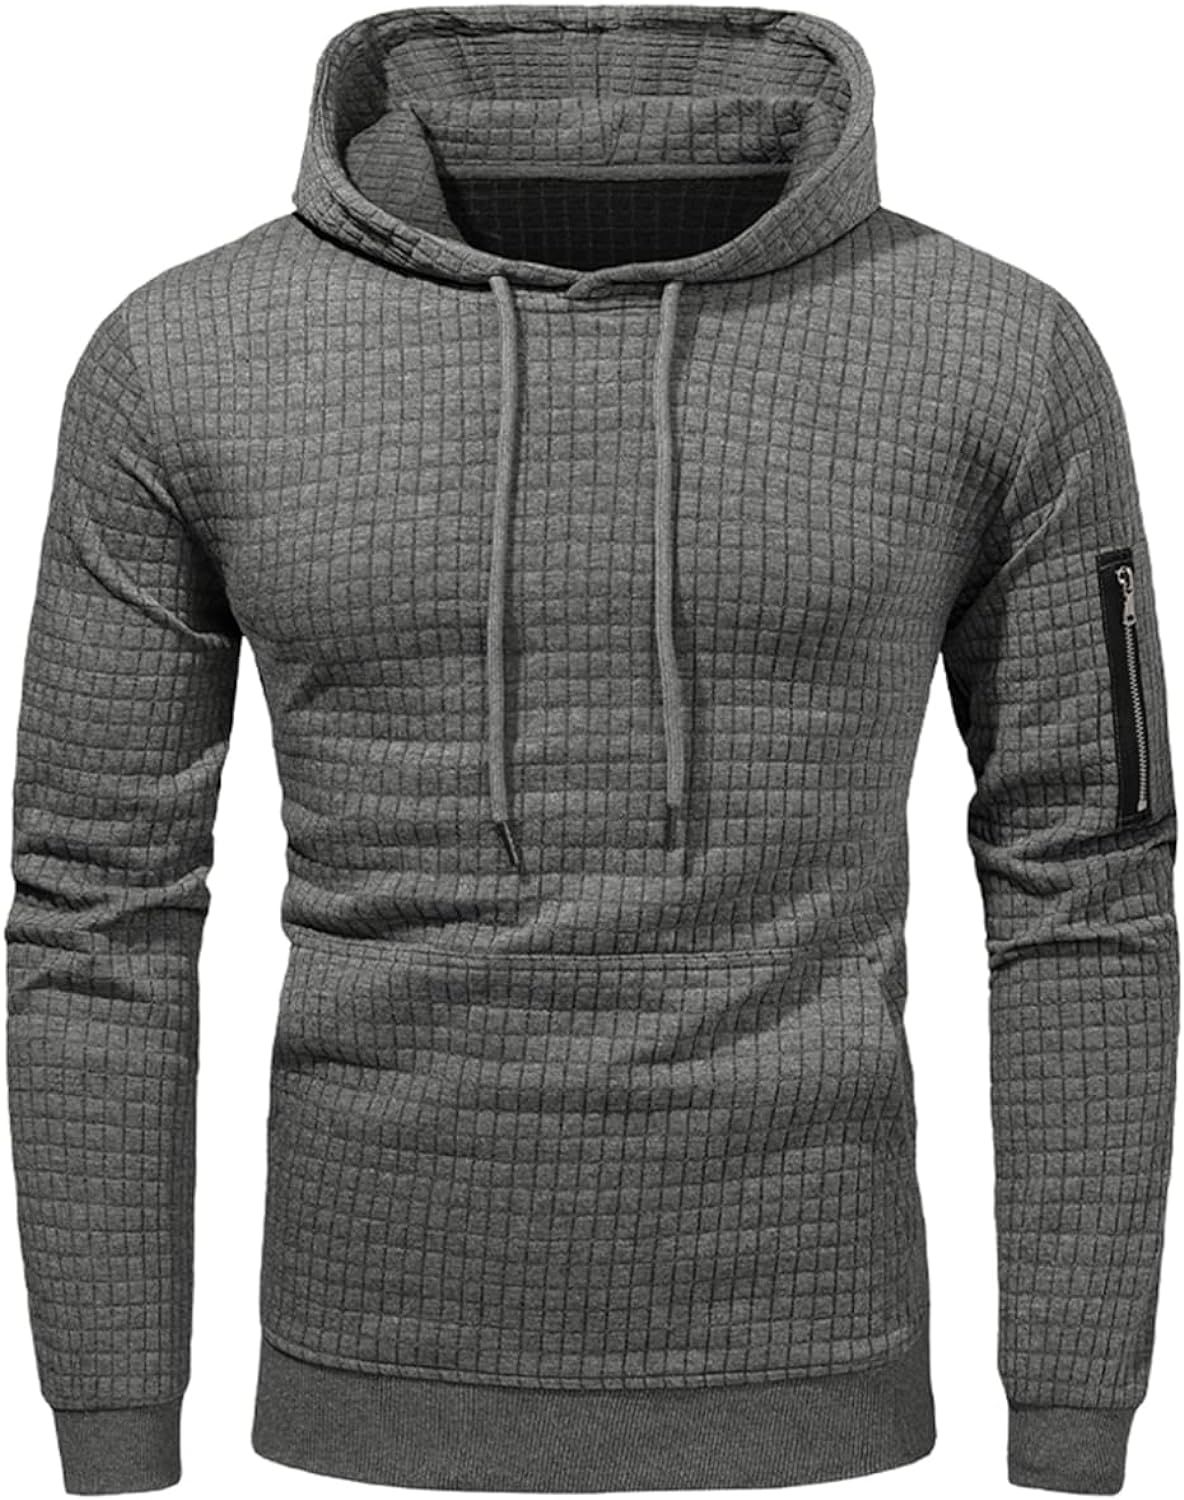 JMIERR Men's Fashion Hoodies Sweatshirt Casual Long Sleeve Drawstring Plaid Jacquard Pullover Hoo... | Amazon (US)